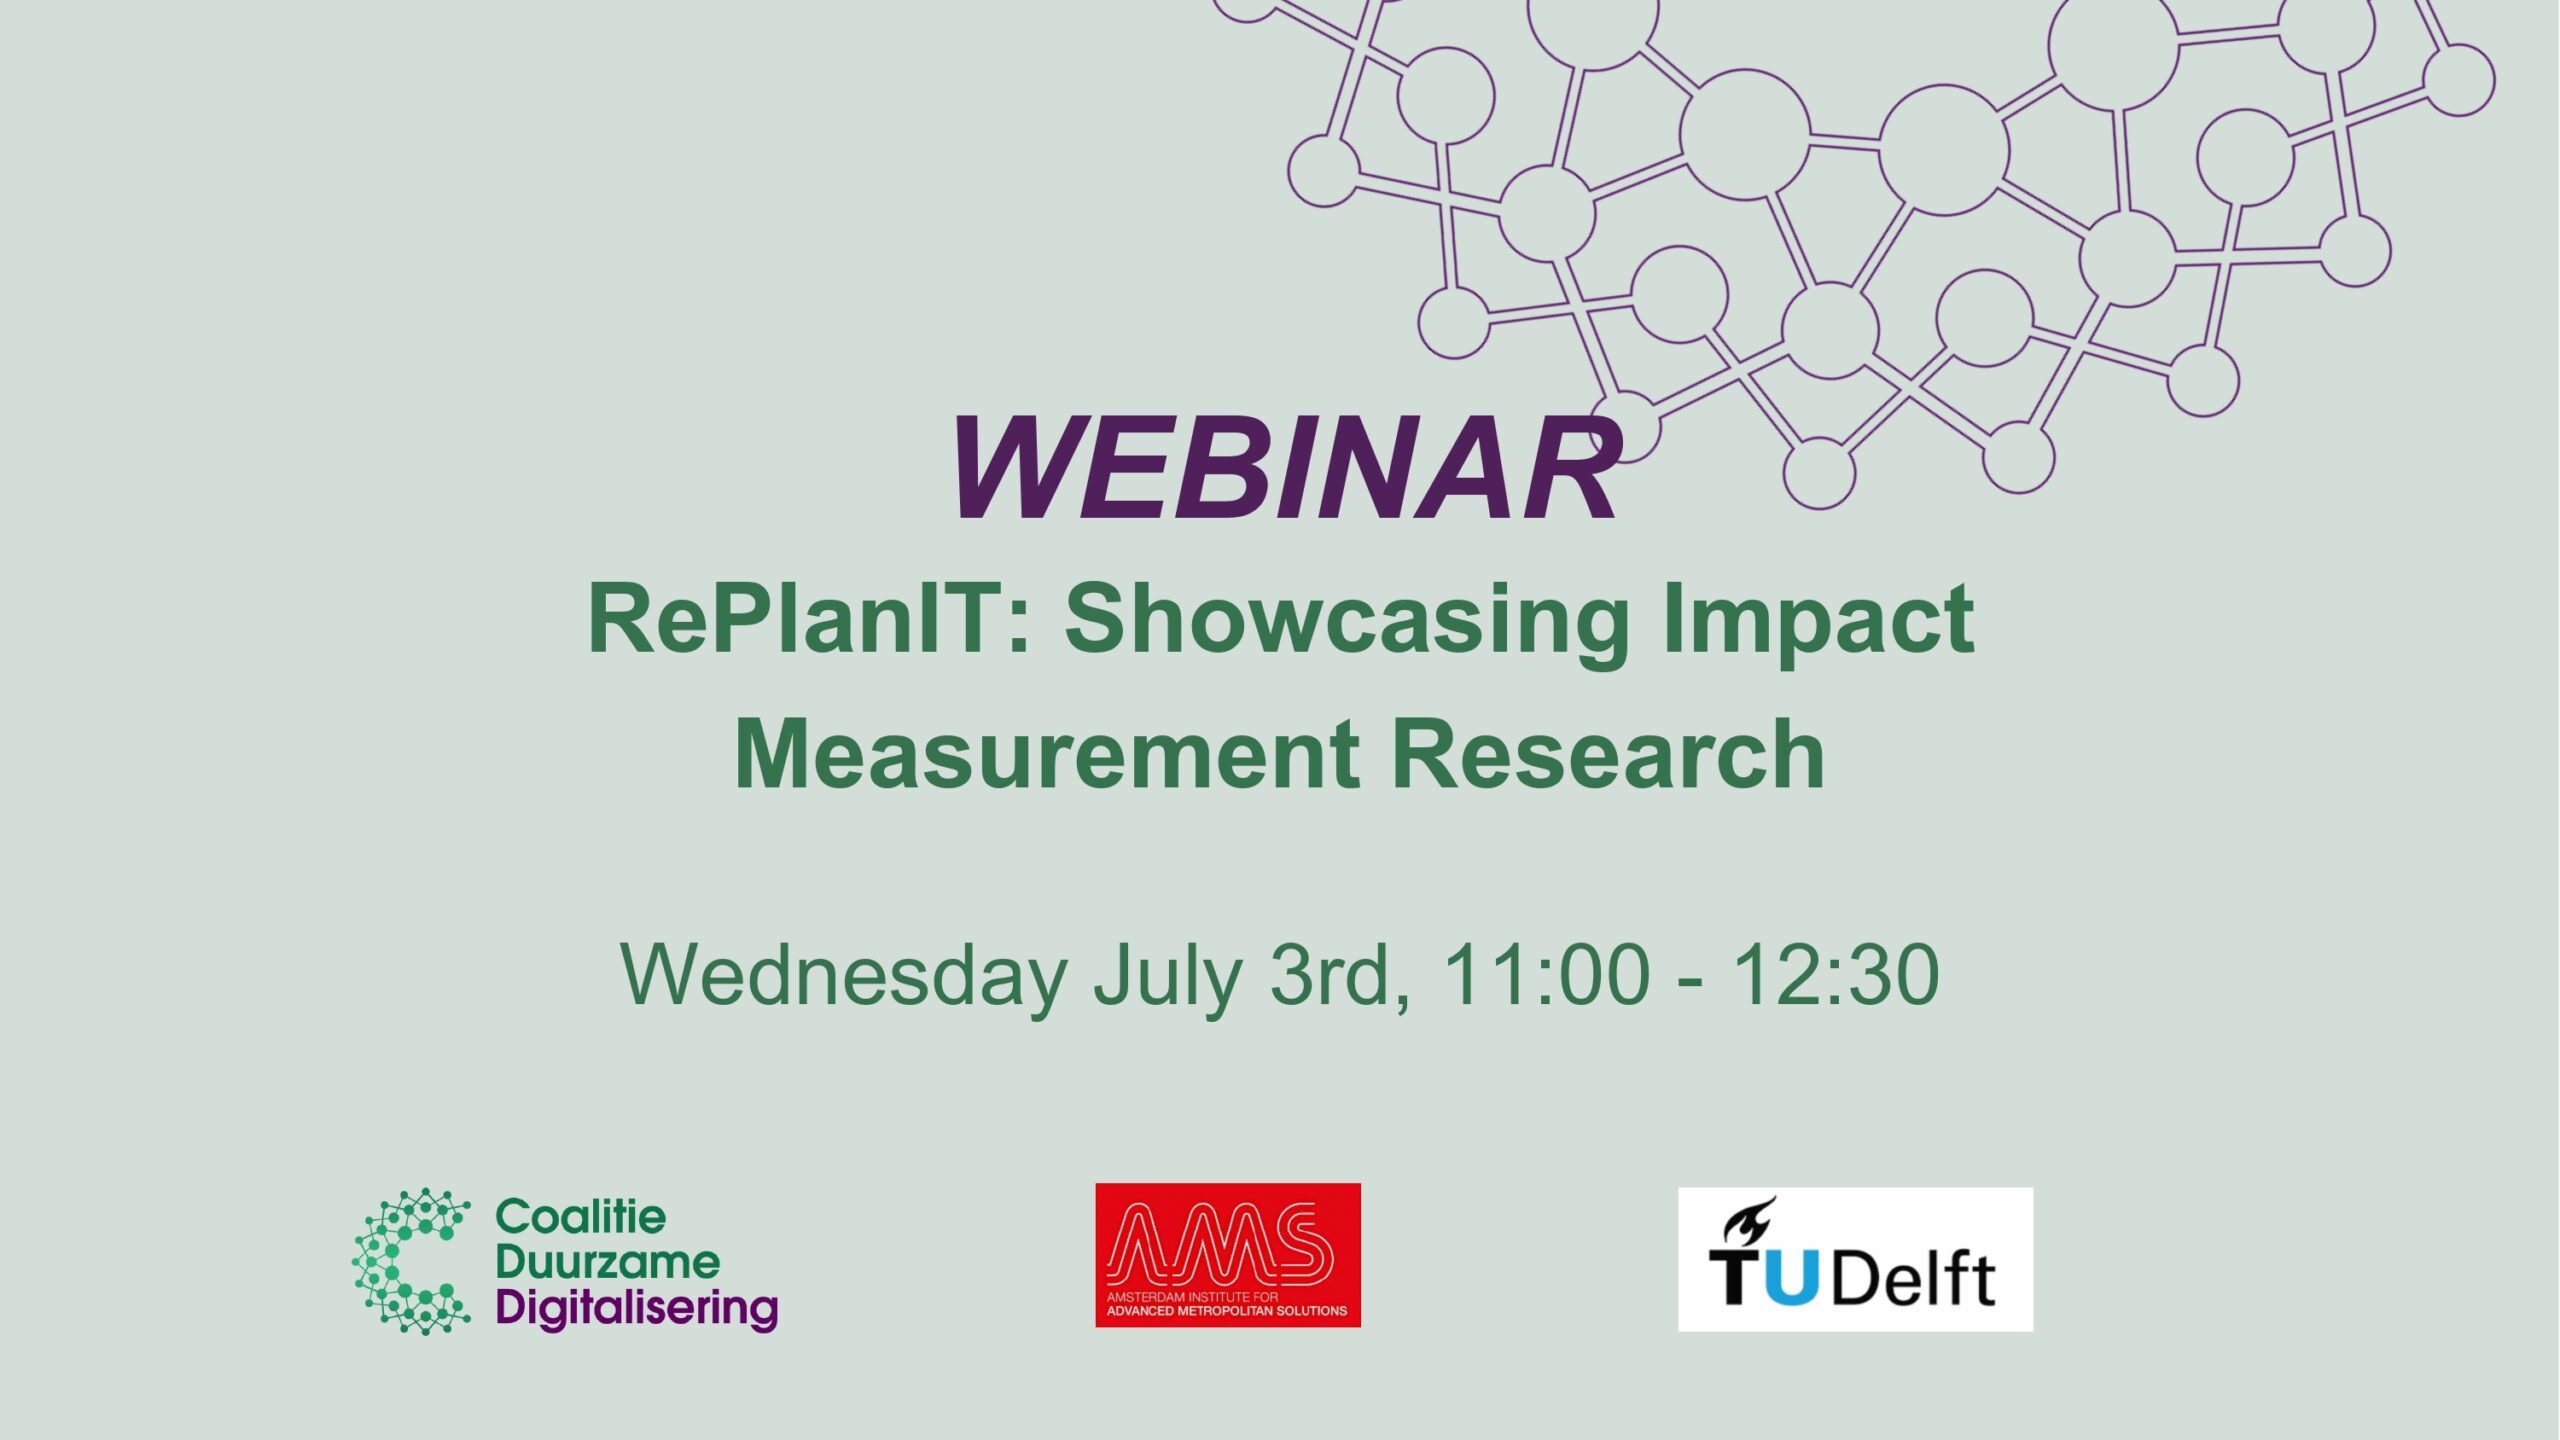 Webinar met RePlanIT: Showcasing Impact Measurement Research